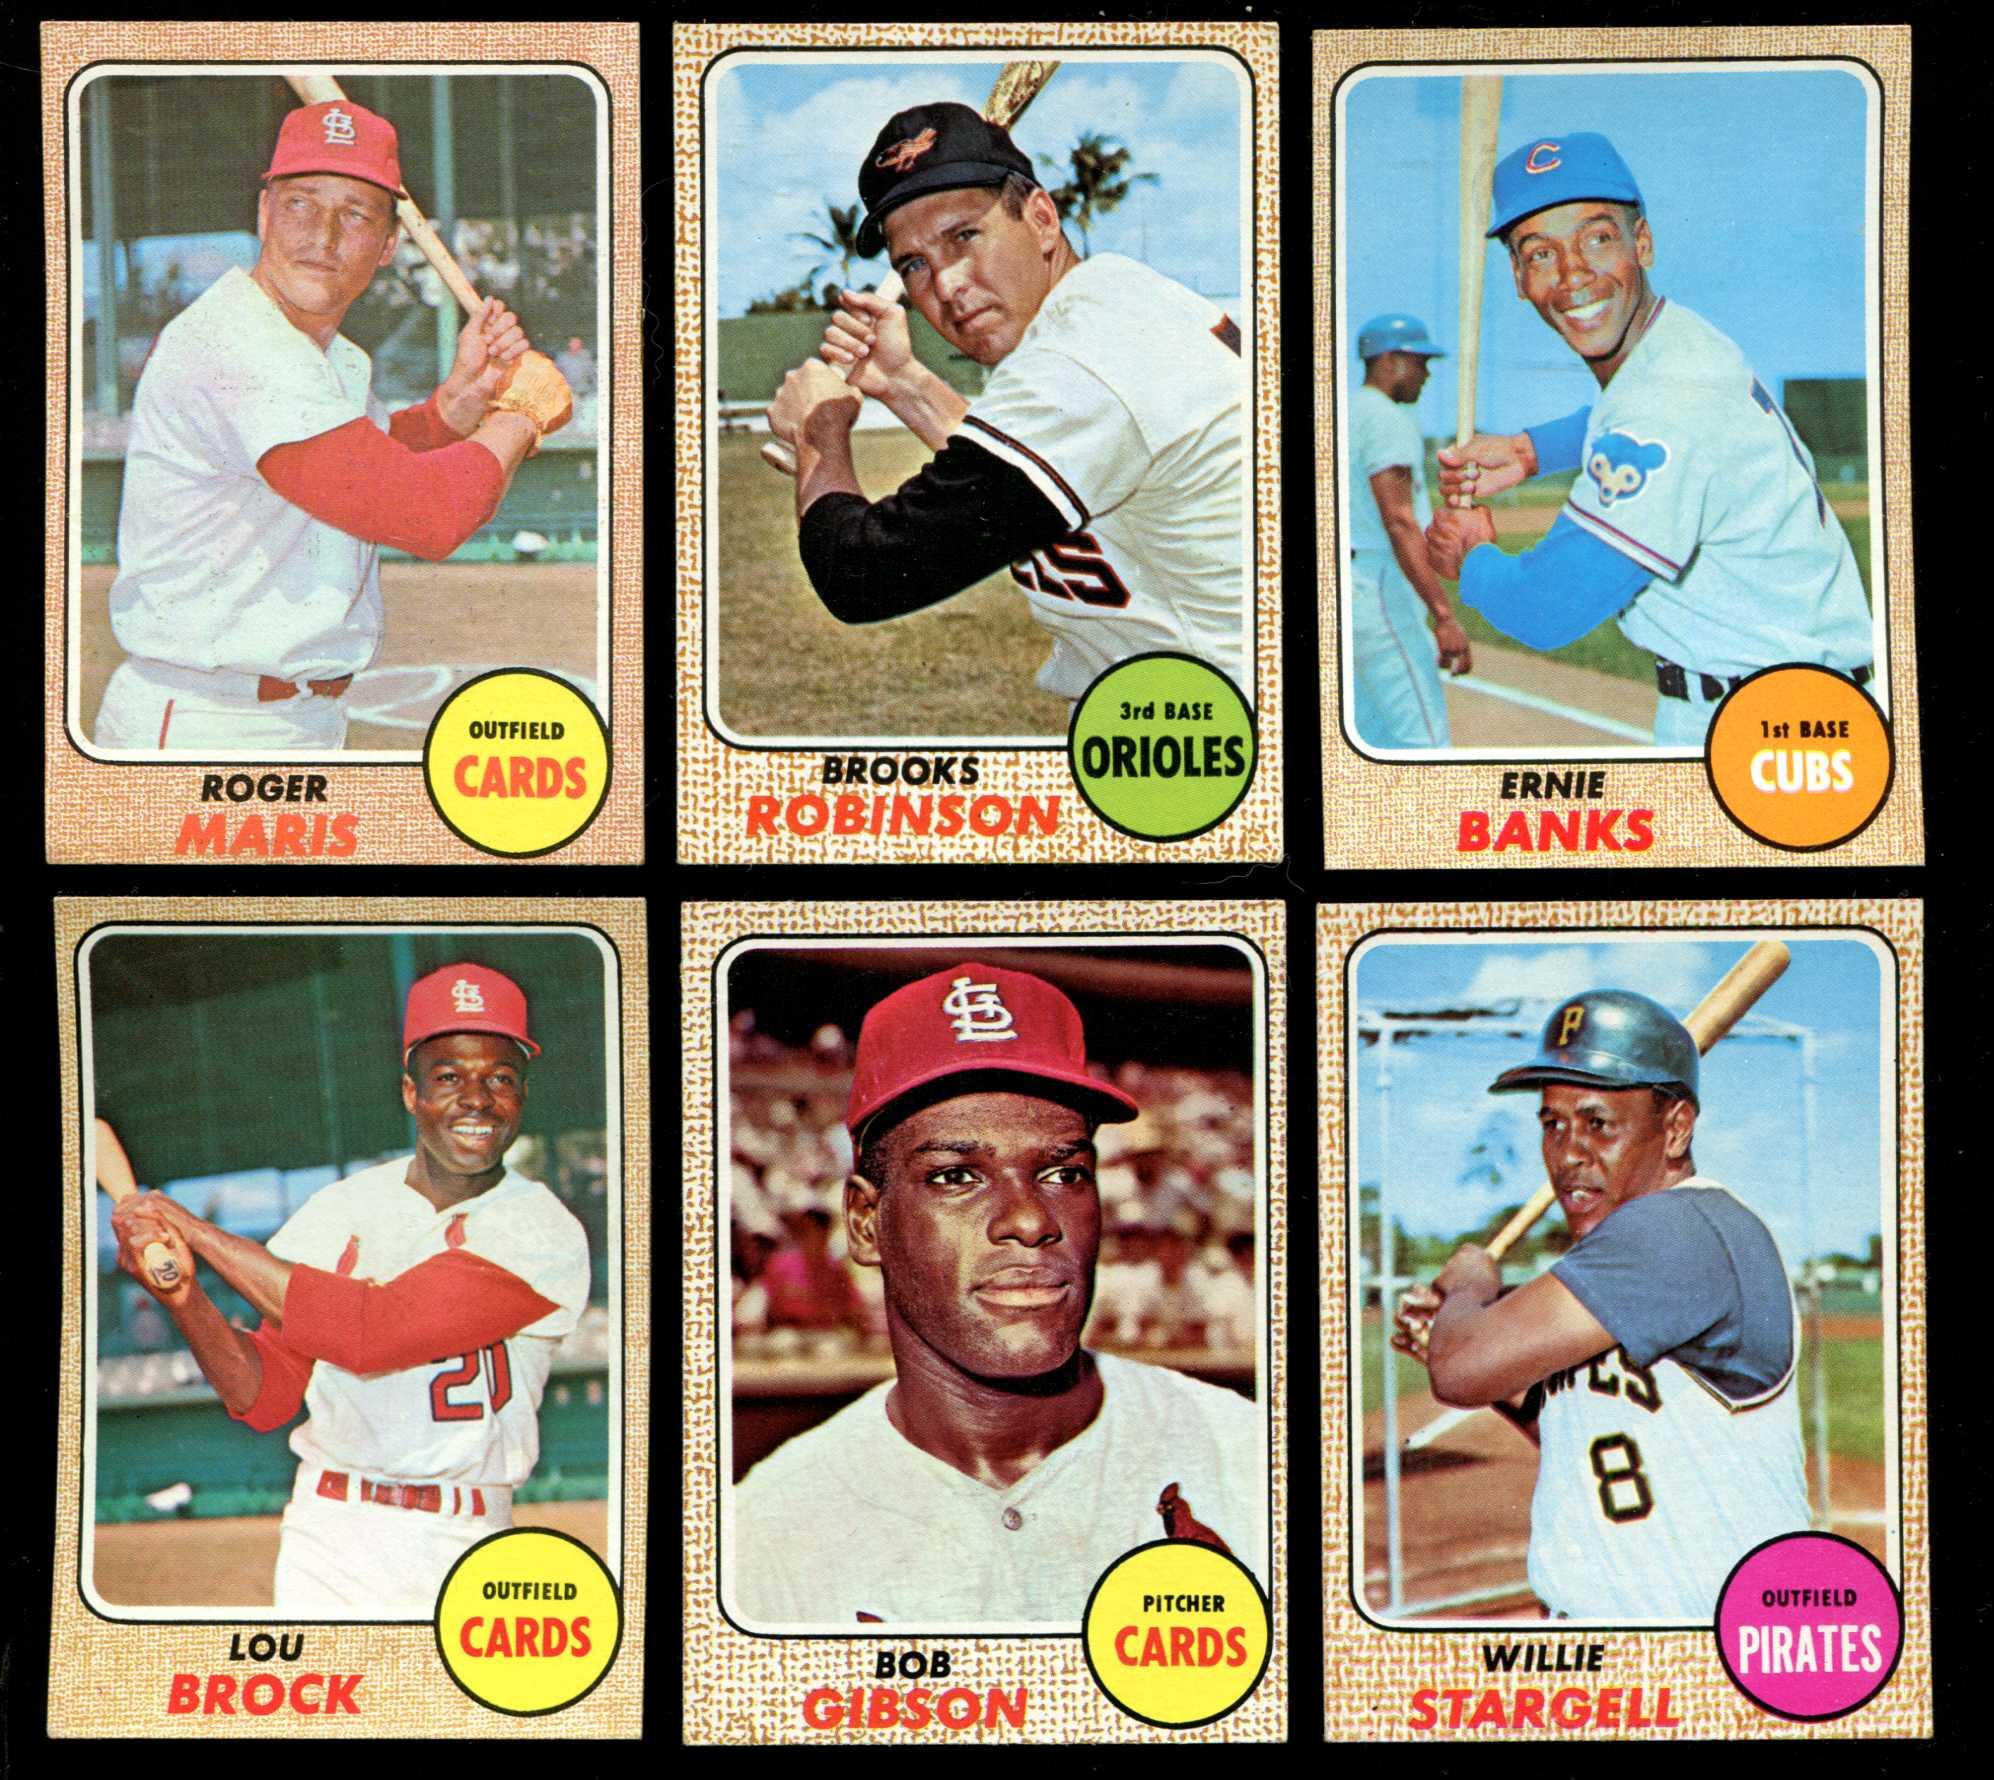  1968 Topps # 254 Cleon Jones New York Mets (Baseball Card)  EX/MT Mets : Collectibles & Fine Art